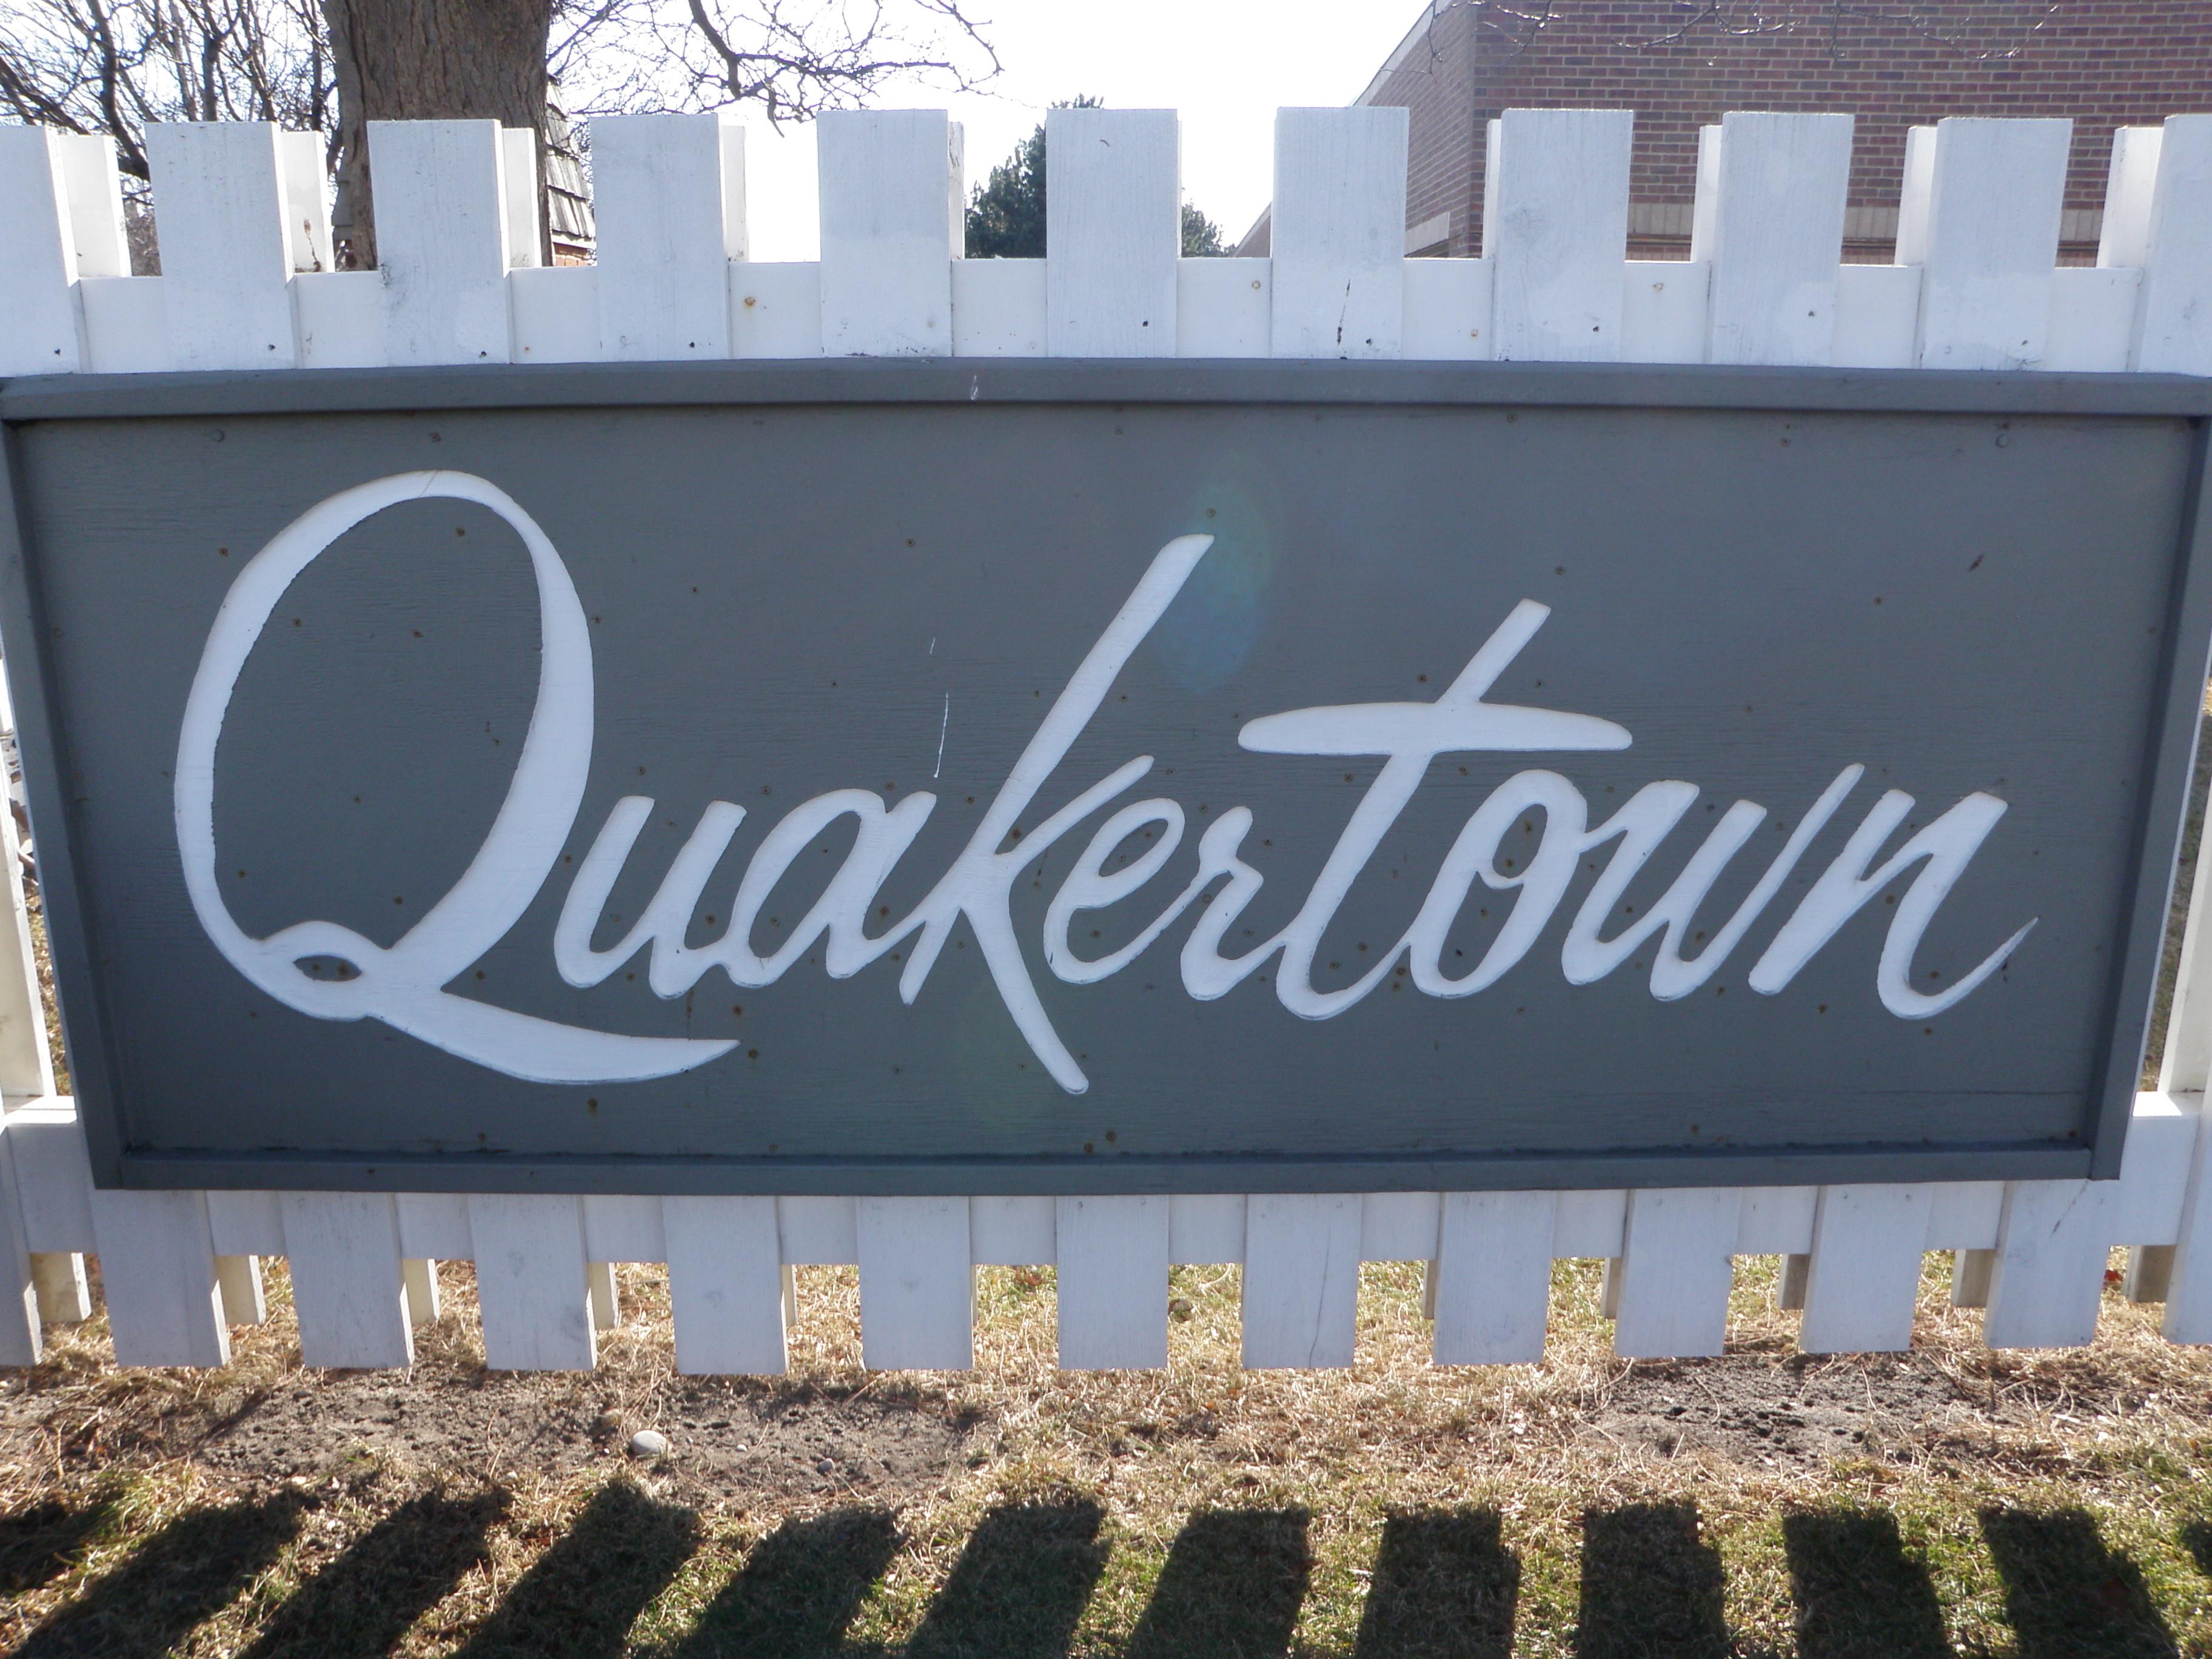 Quakertown Livonia Michigan